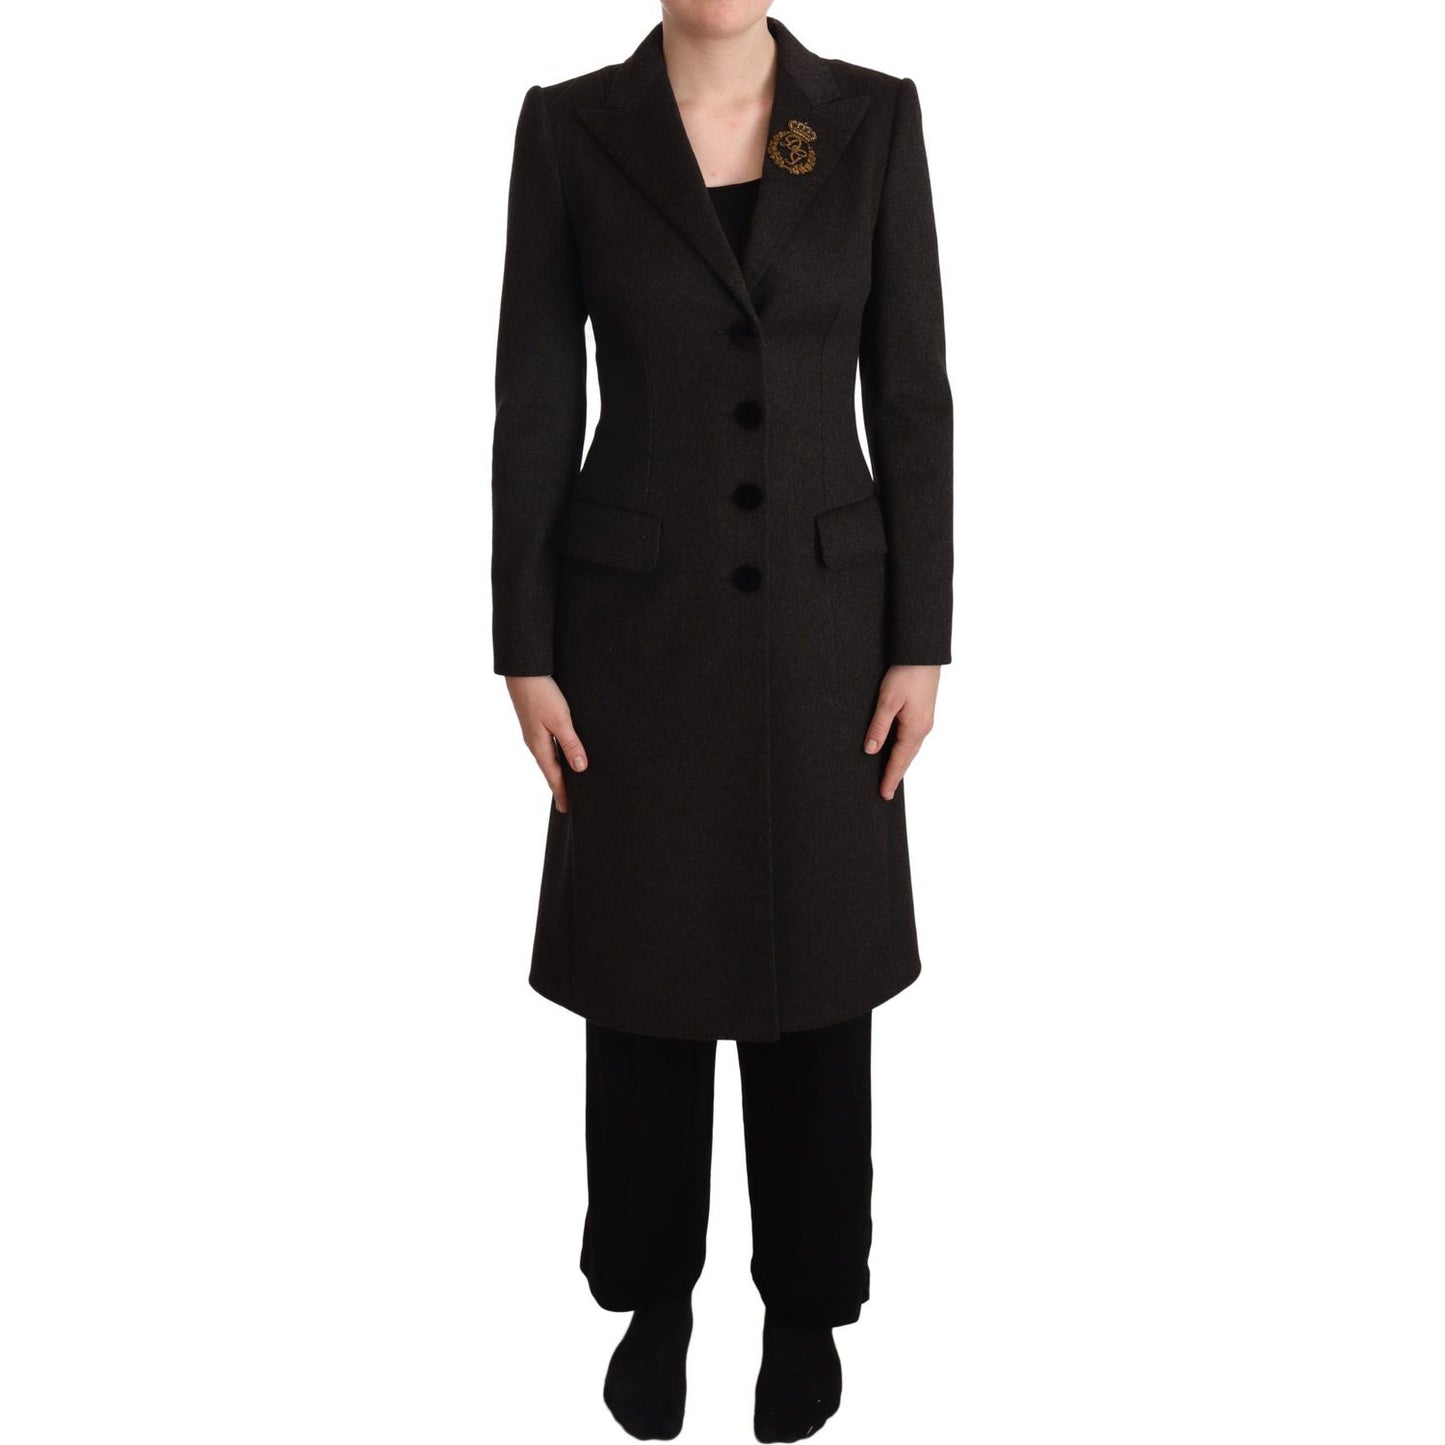 Dolce & Gabbana Gray Wool Cashmere Coat Crest Applique Jacket gray-wool-cashmere-coat-crest-applique-jacket IMG_1300-scaled-786c3c48-201.jpg